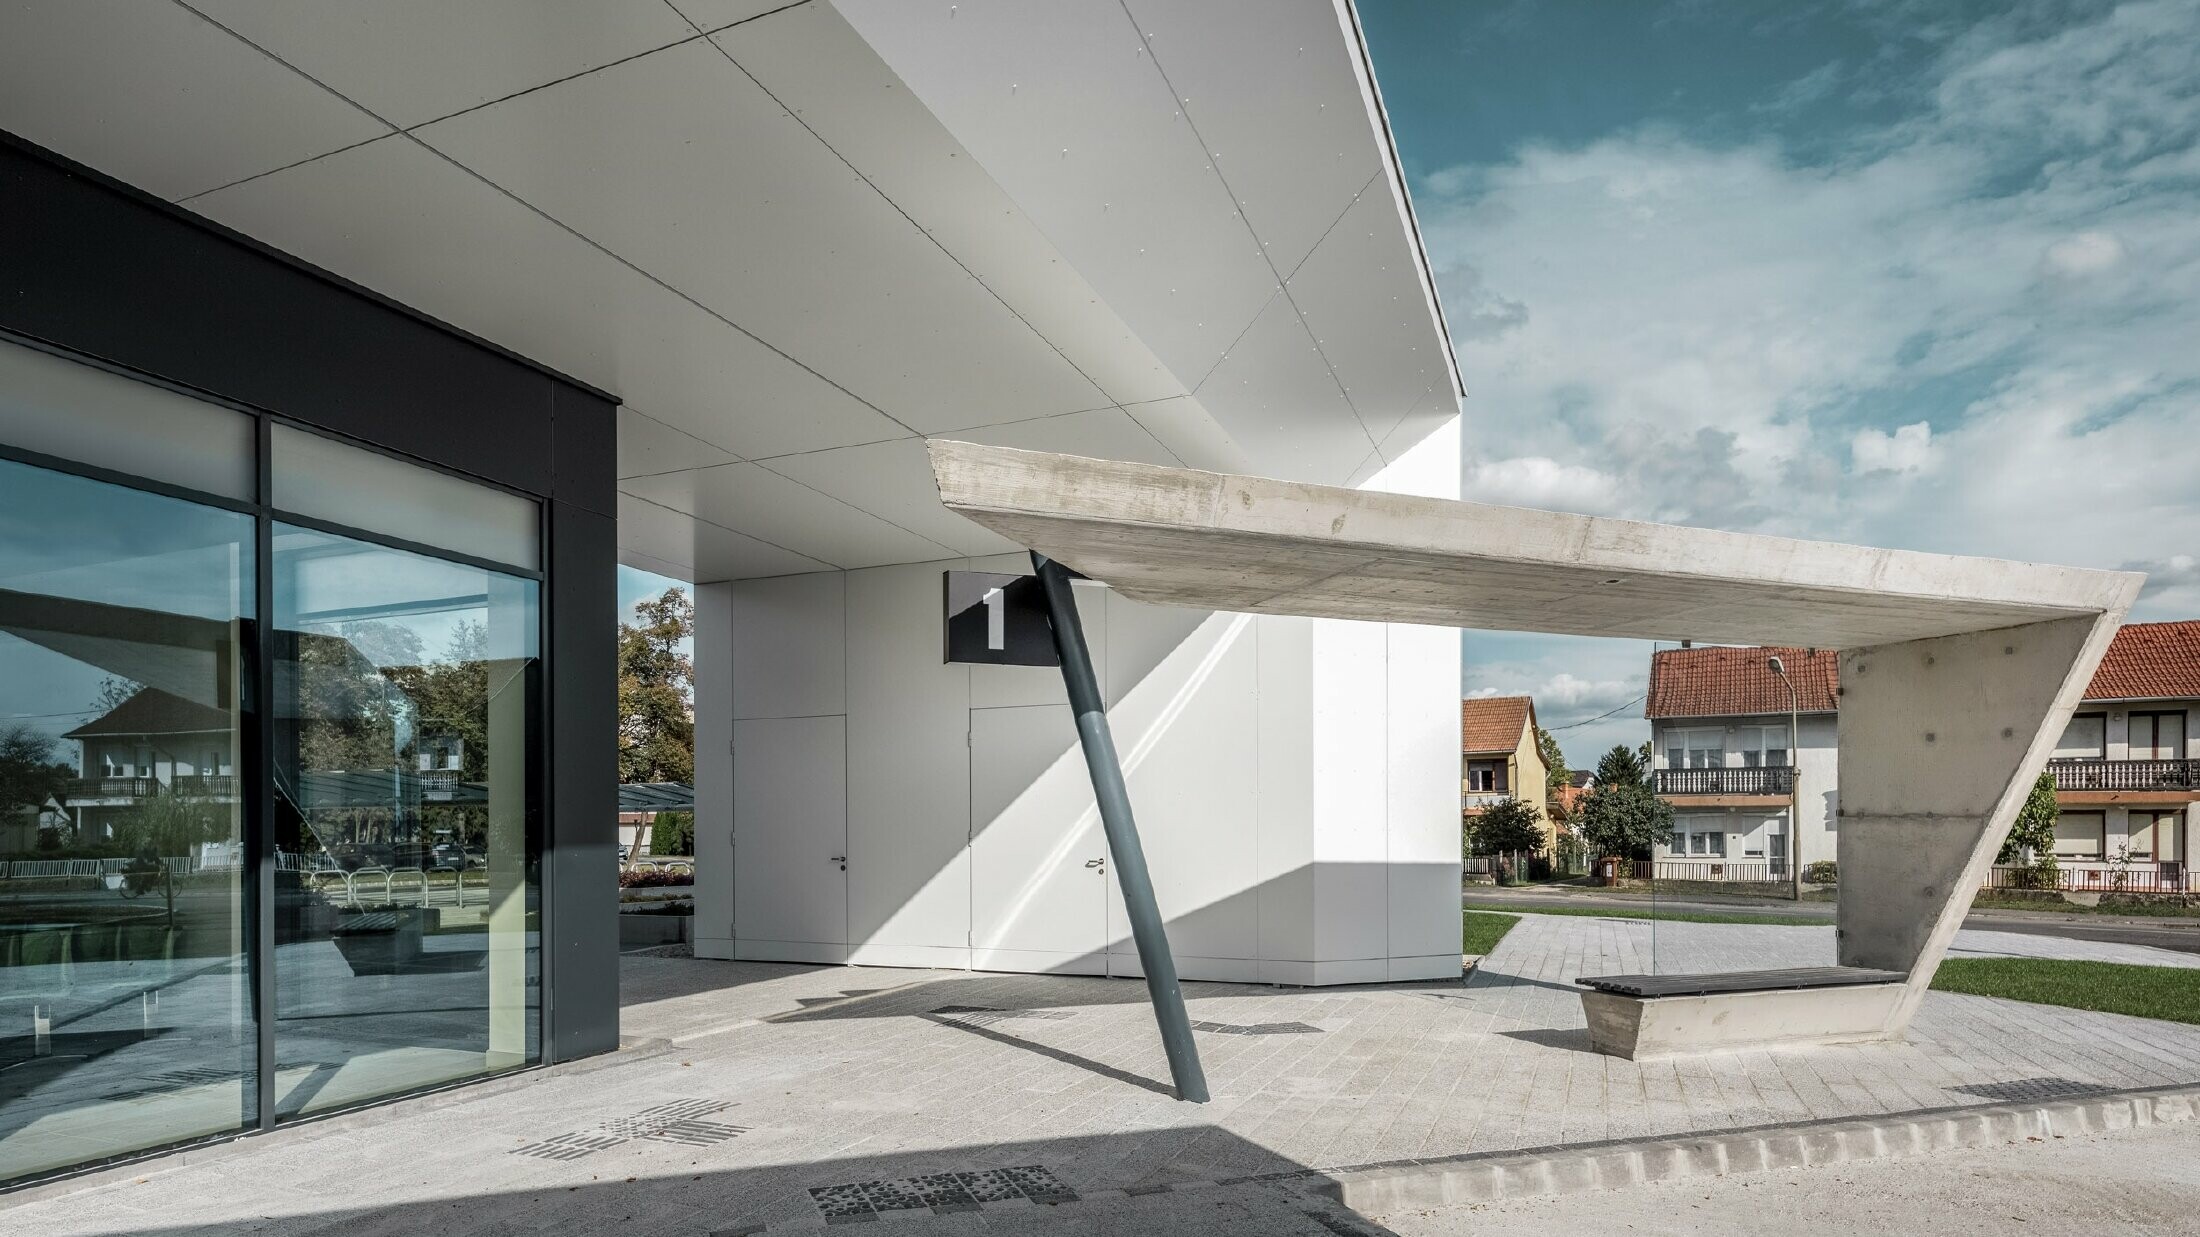 Eingangsbereich des Busbahnhofs Lenti; die Untersicht der Überdachung ist mit der PREFABOND Aluminium Verbundplatte von PREFA in Reinweiß verkleidet, die Fassadenelemente bei den Eingangstüren und Schaufenstern ist in P.10 anthrazit verkleidet.